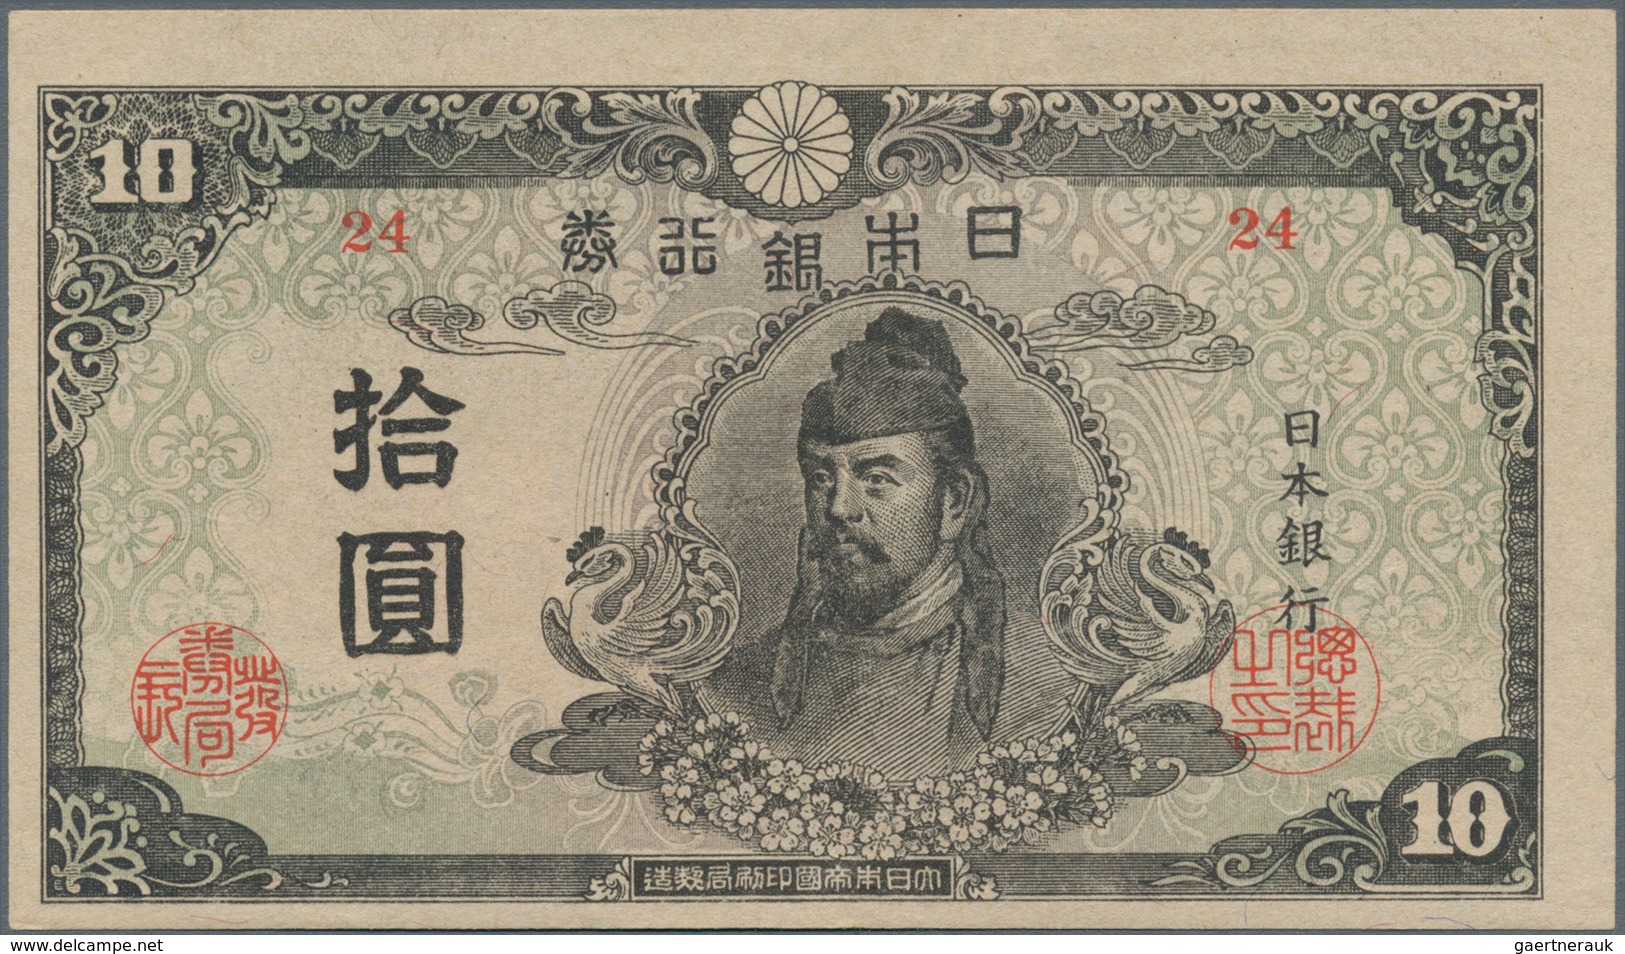 Japan: 10 Yen 1945 With Block #24, P.77a In AUNC/UNC Condition. - Japan